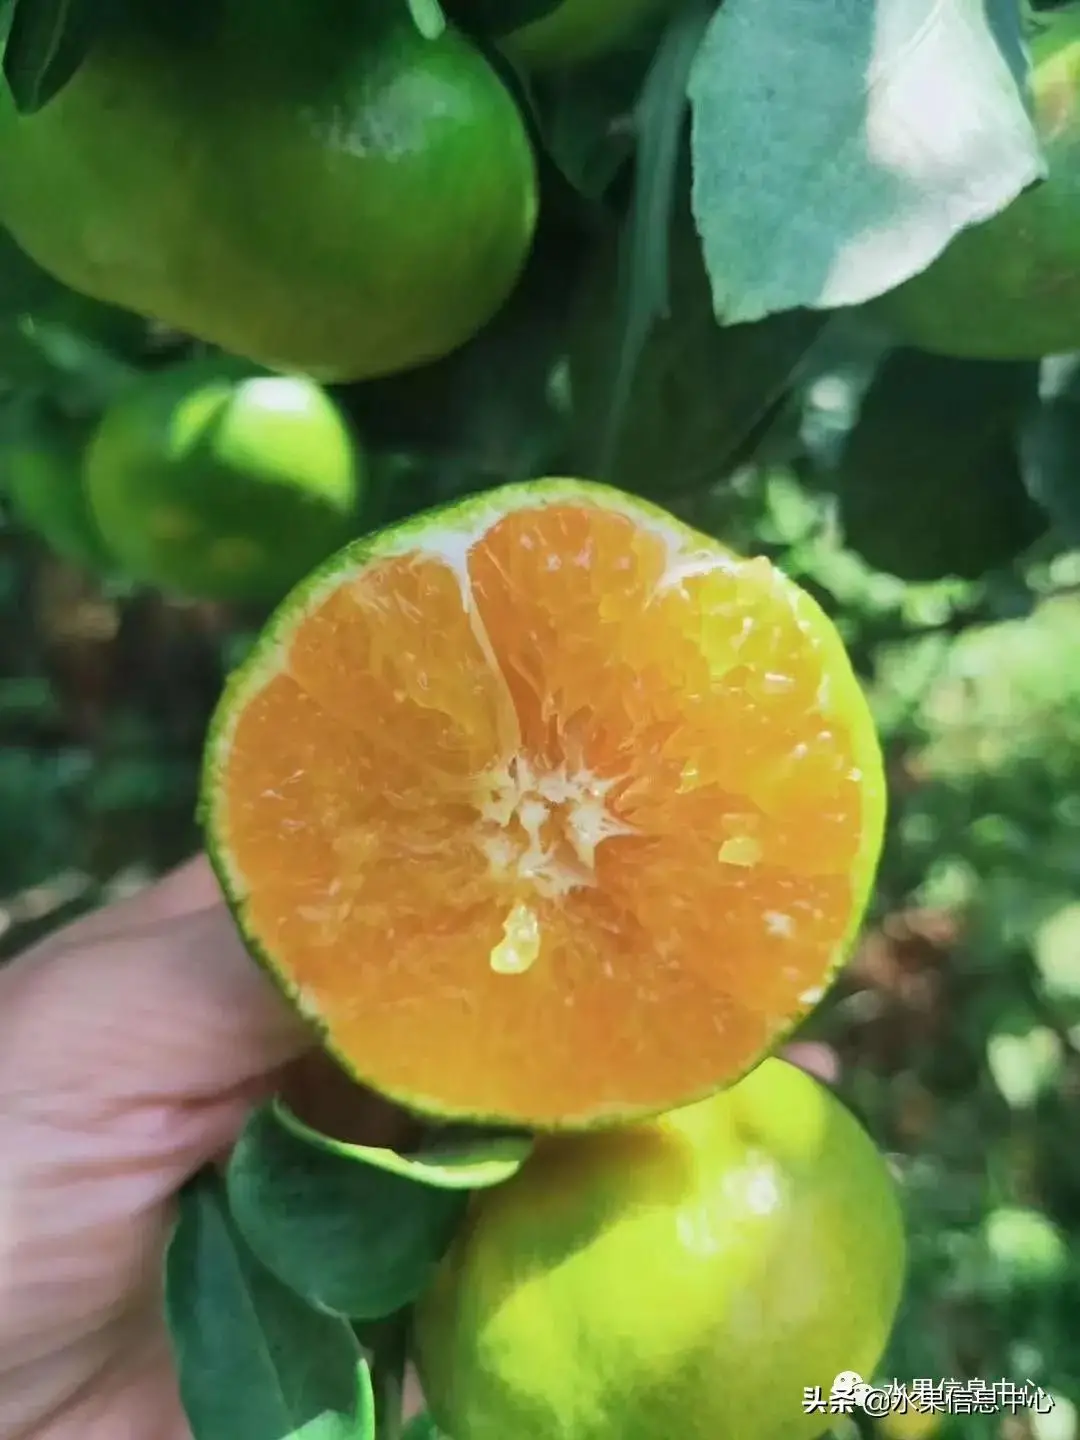 柑橘产地最全图鉴，一份柑橘指南大解析